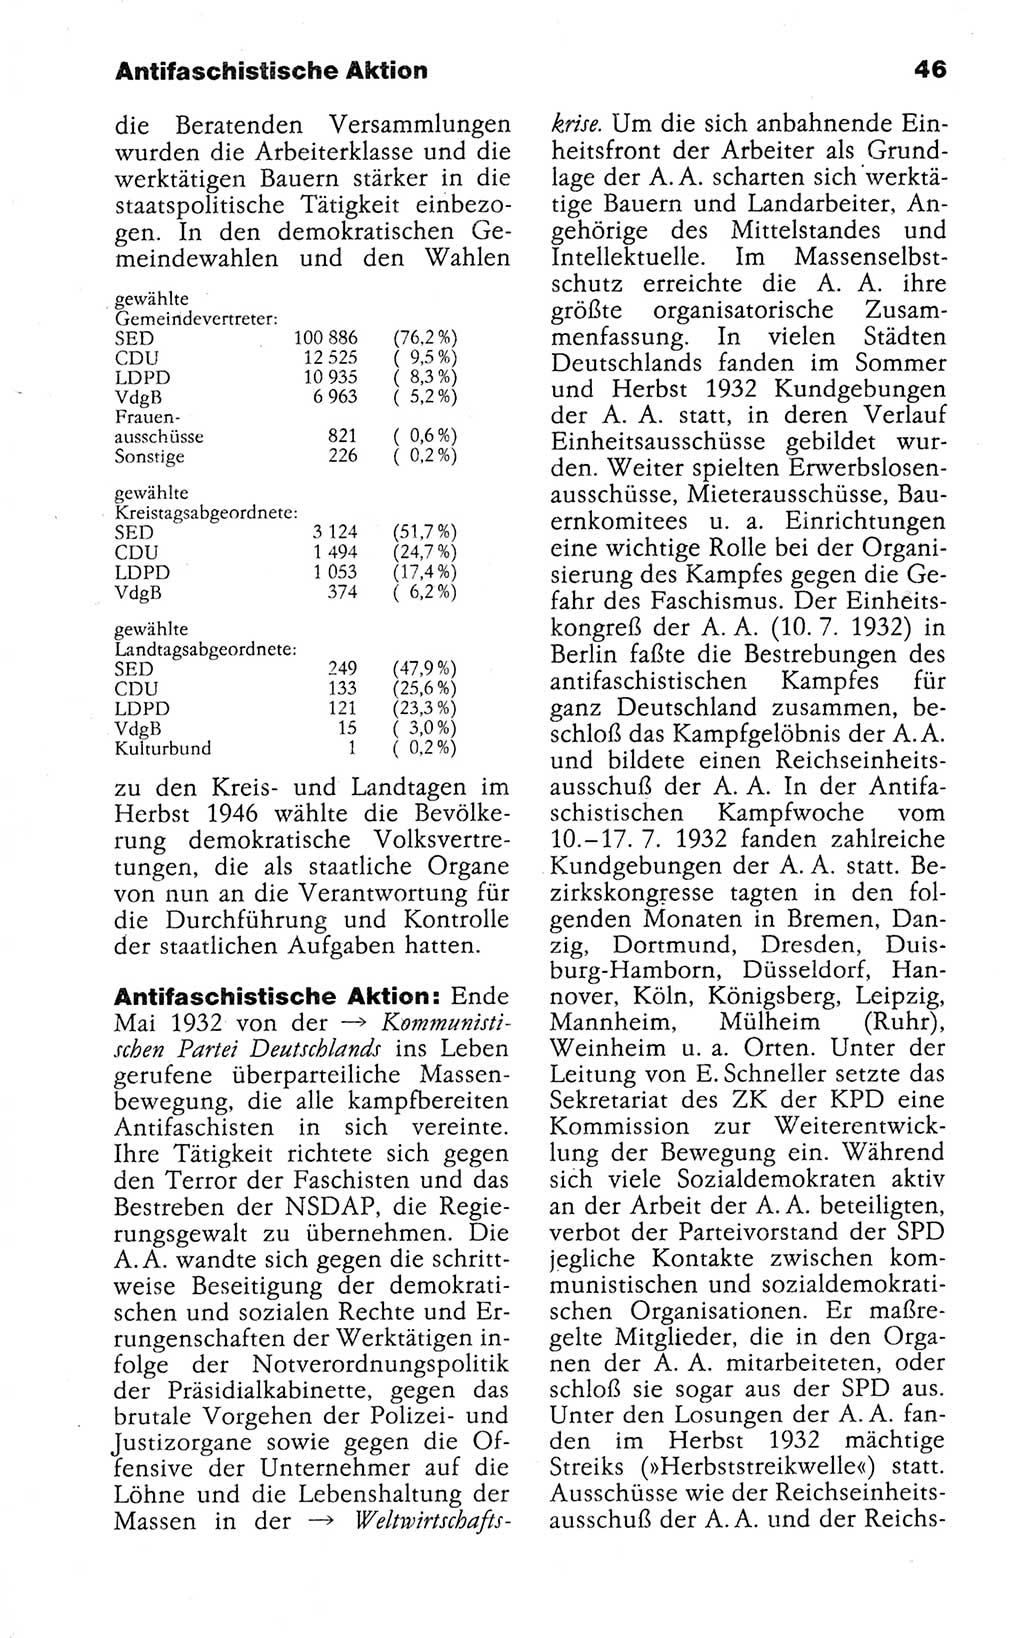 Kleines politisches Wörterbuch [Deutsche Demokratische Republik (DDR)] 1988, Seite 46 (Kl. pol. Wb. DDR 1988, S. 46)